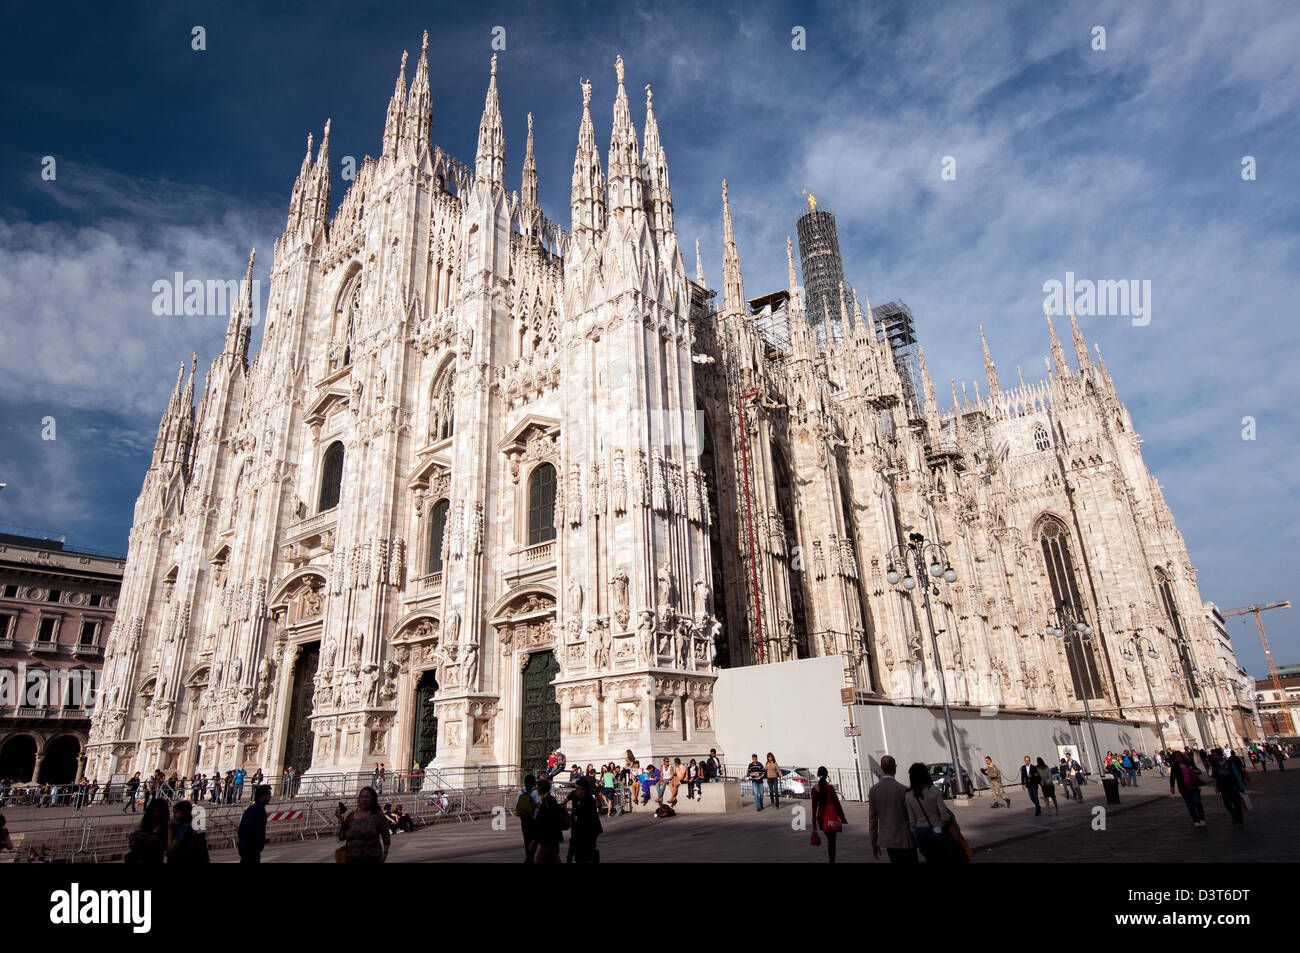 A View of Duomo de Milano Stock Photo